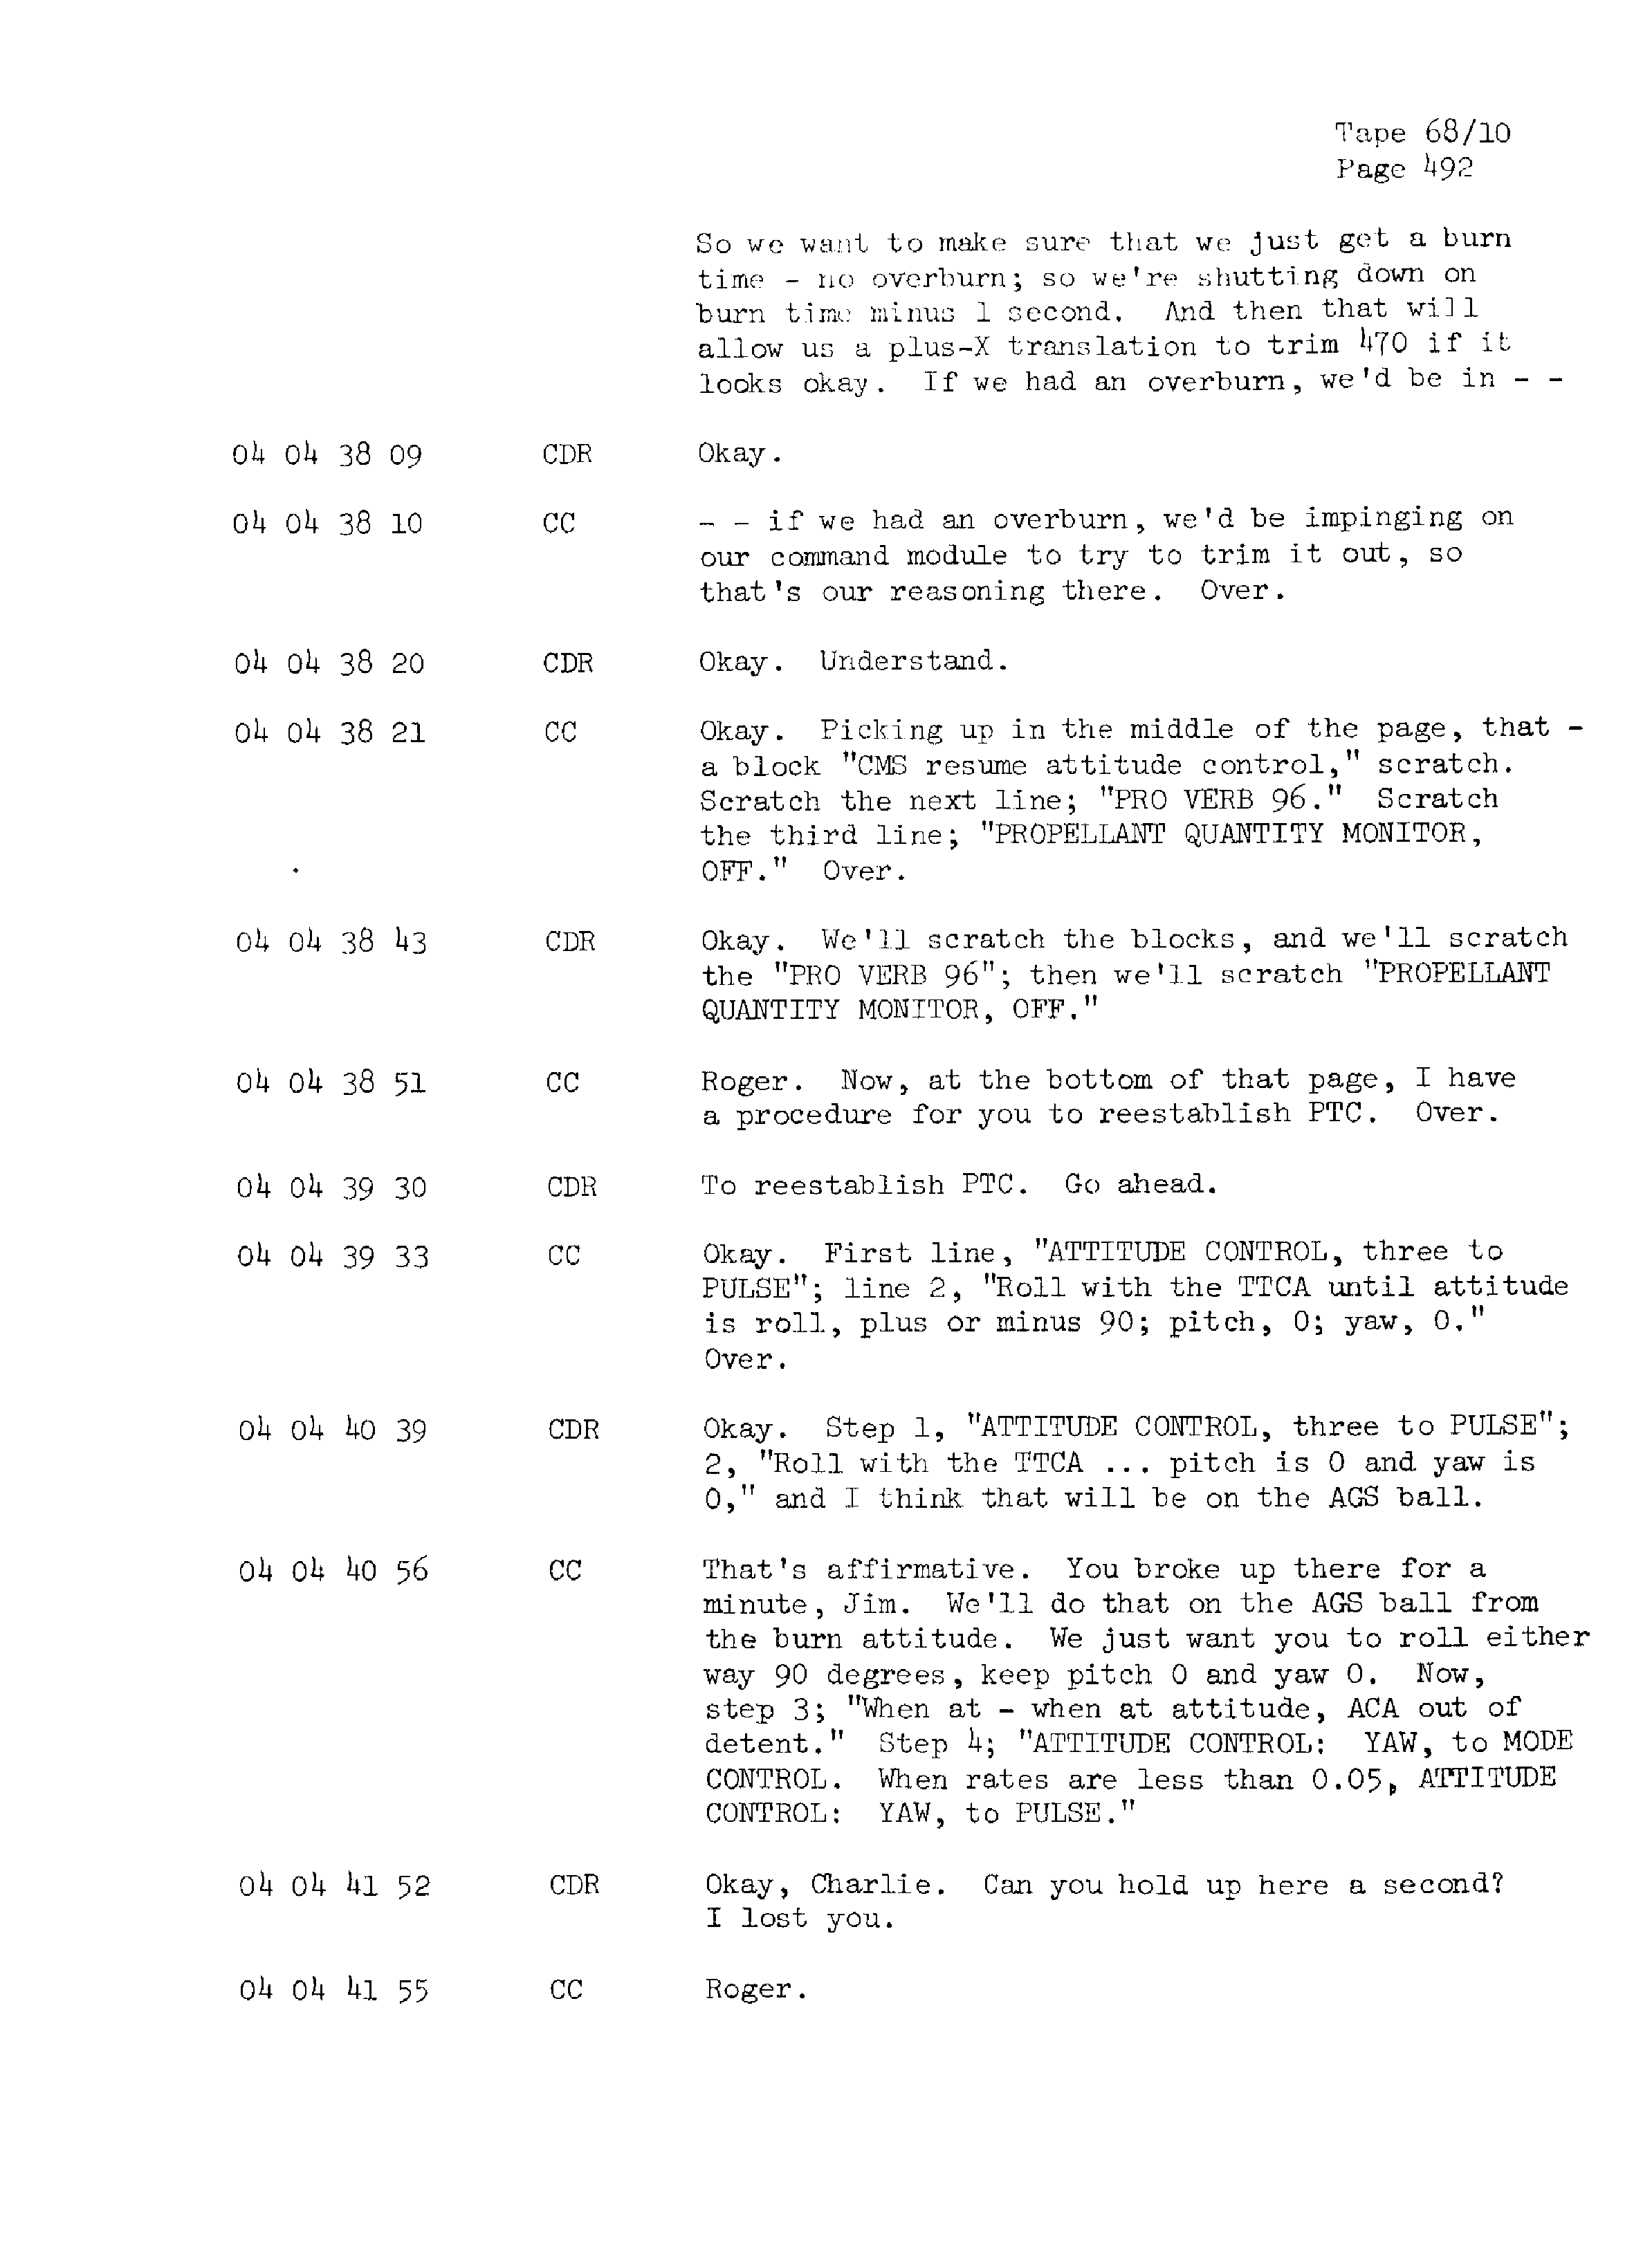 Page 499 of Apollo 13’s original transcript